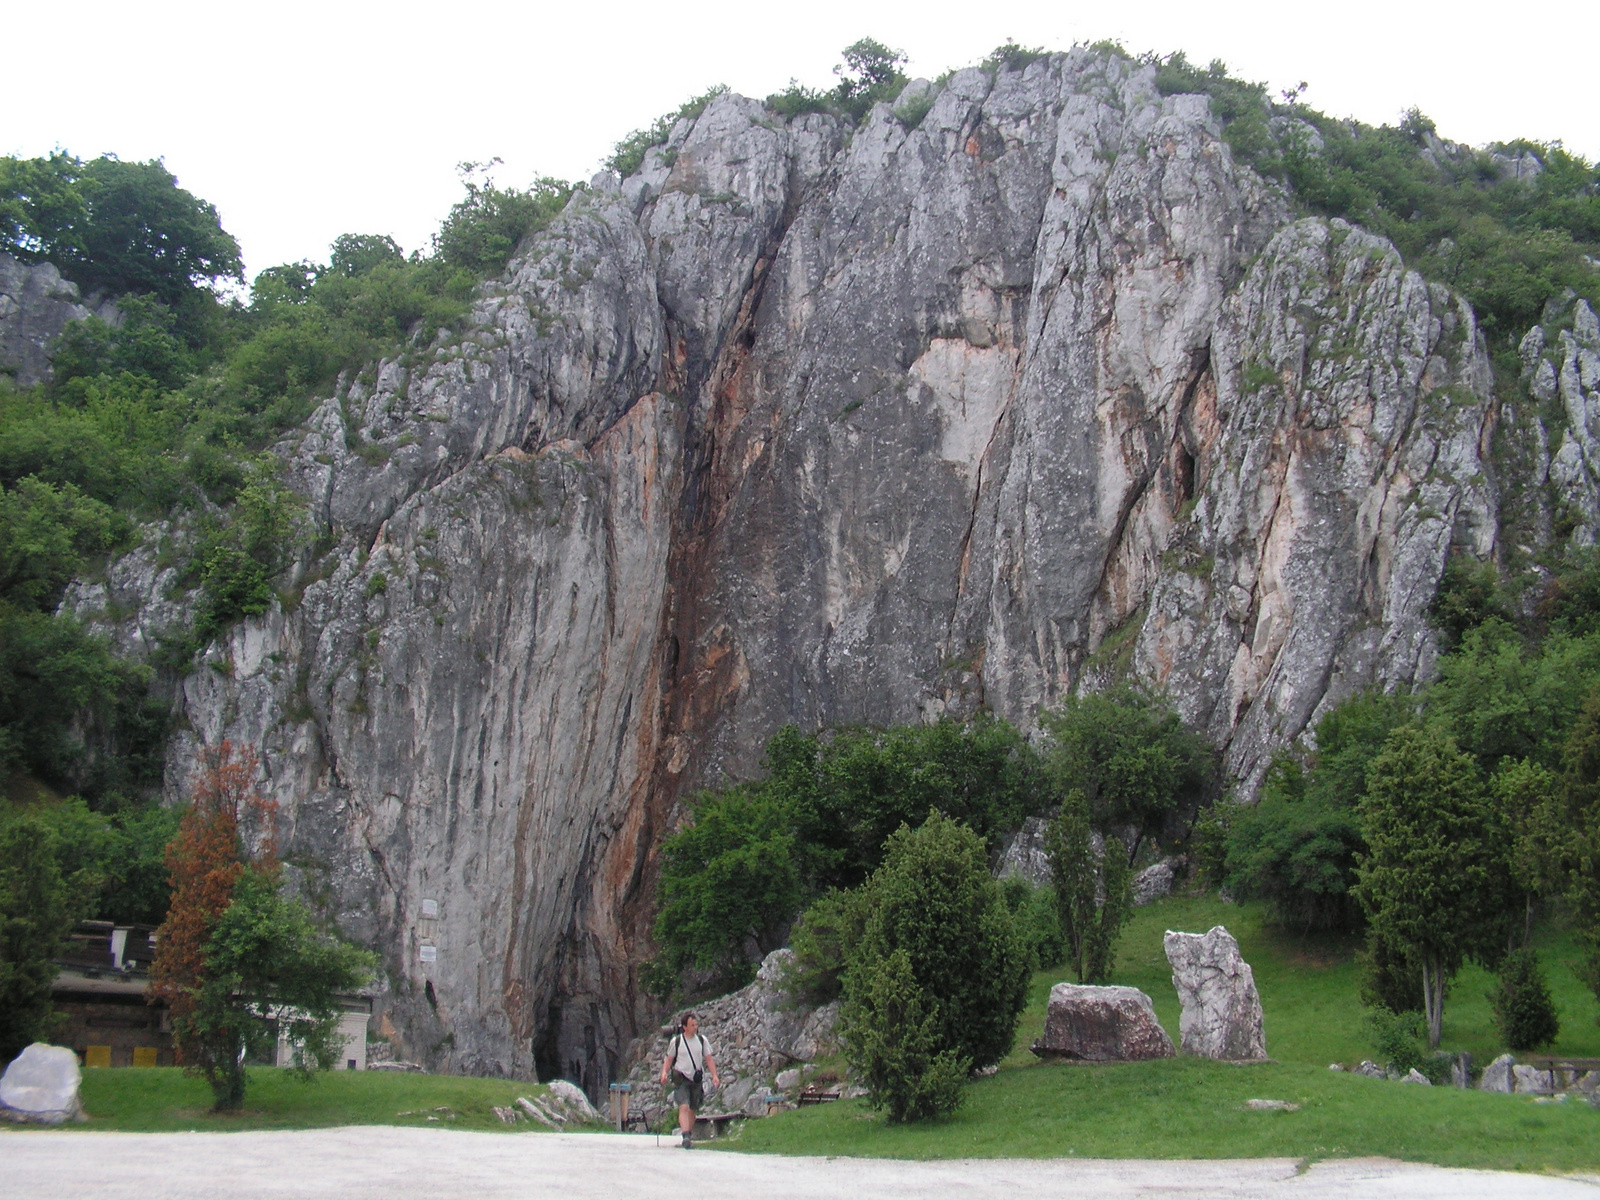 320 Aggtelek, sziklafal a Baradla-barlang bejáratánál